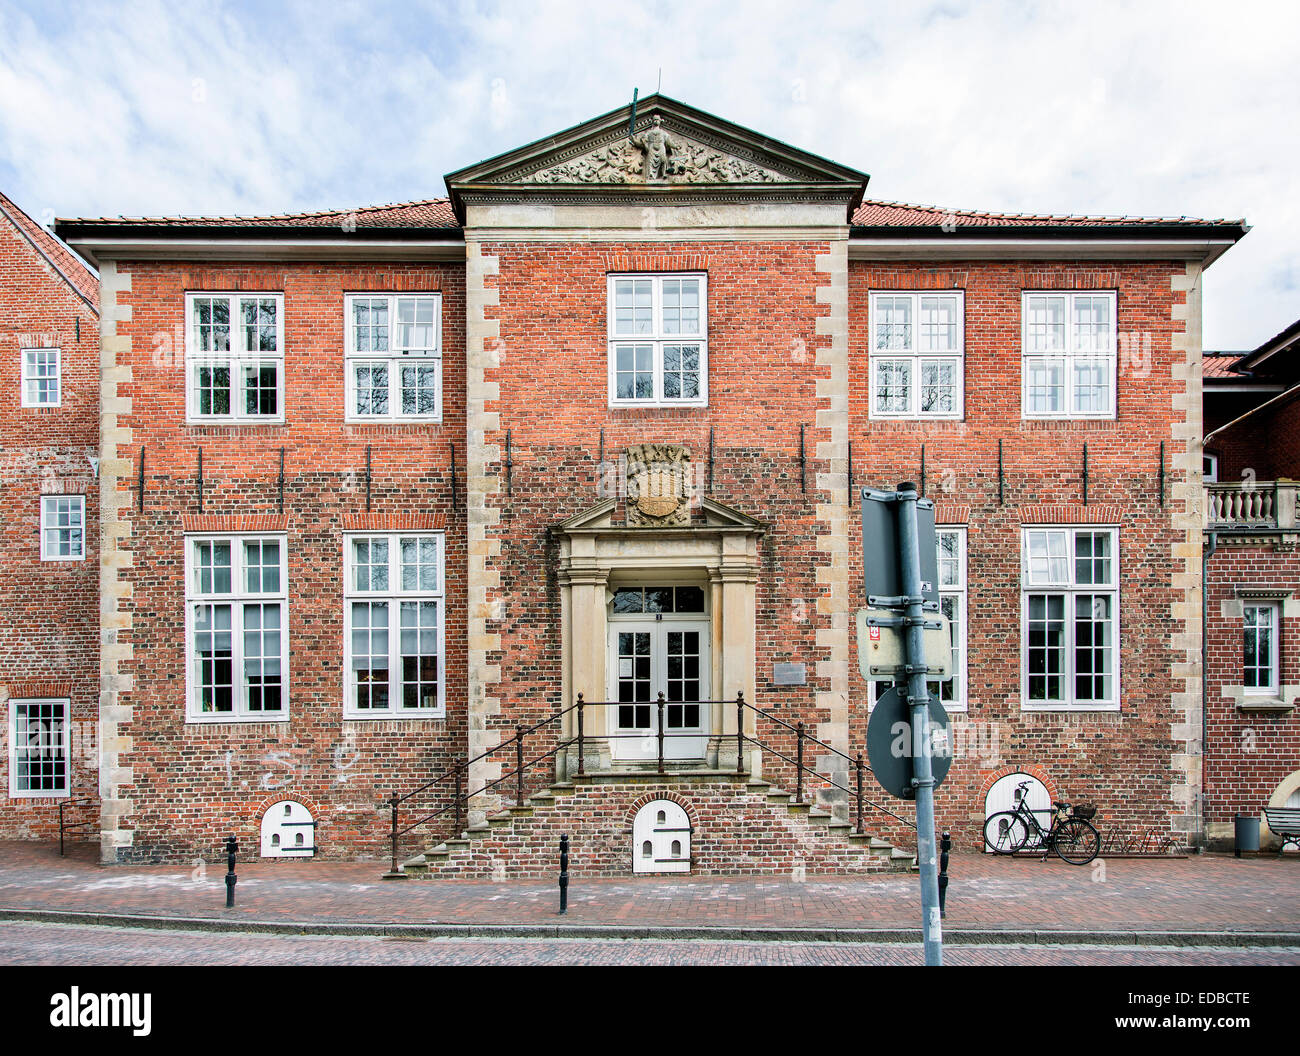 Amtsgericht, ehemalige Urteil Hall, Jever, Friesland, Niedersachsen, Deutschland Stockfoto